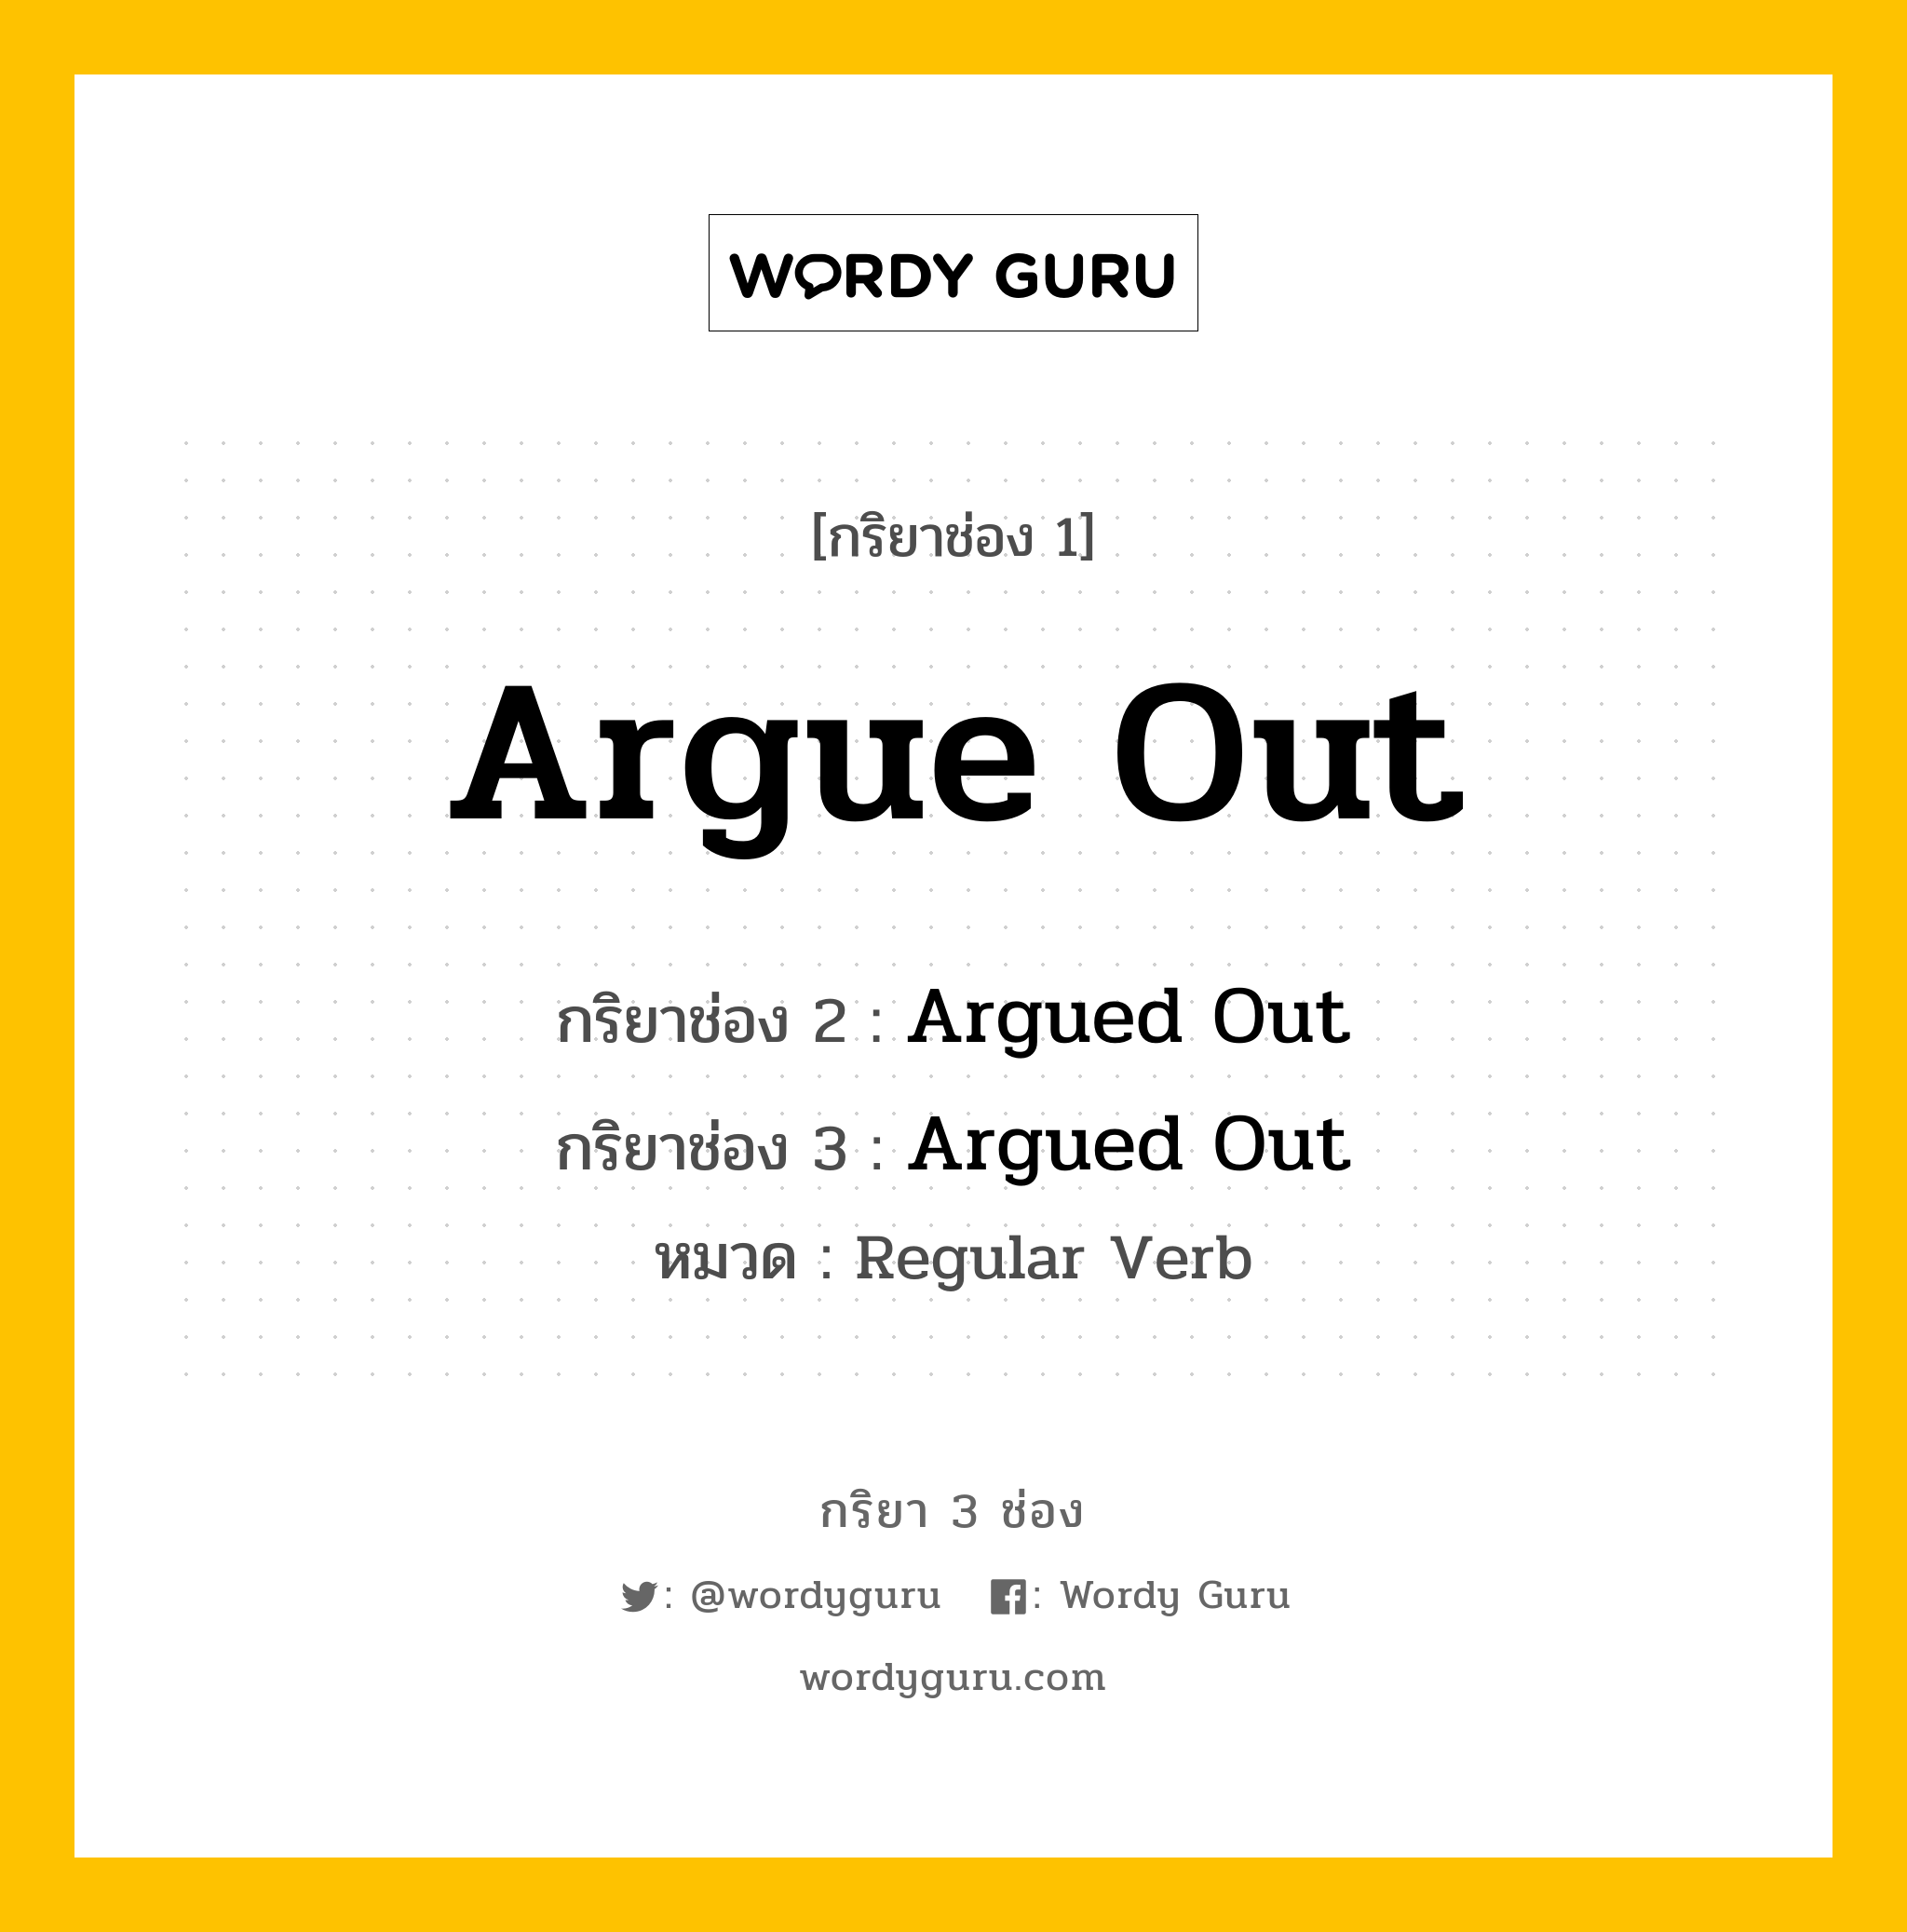 กริยา 3 ช่อง: Argue Out ช่อง 2 Argue Out ช่อง 3 คืออะไร, กริยาช่อง 1 Argue Out กริยาช่อง 2 Argued Out กริยาช่อง 3 Argued Out หมวด Regular Verb หมวด Regular Verb